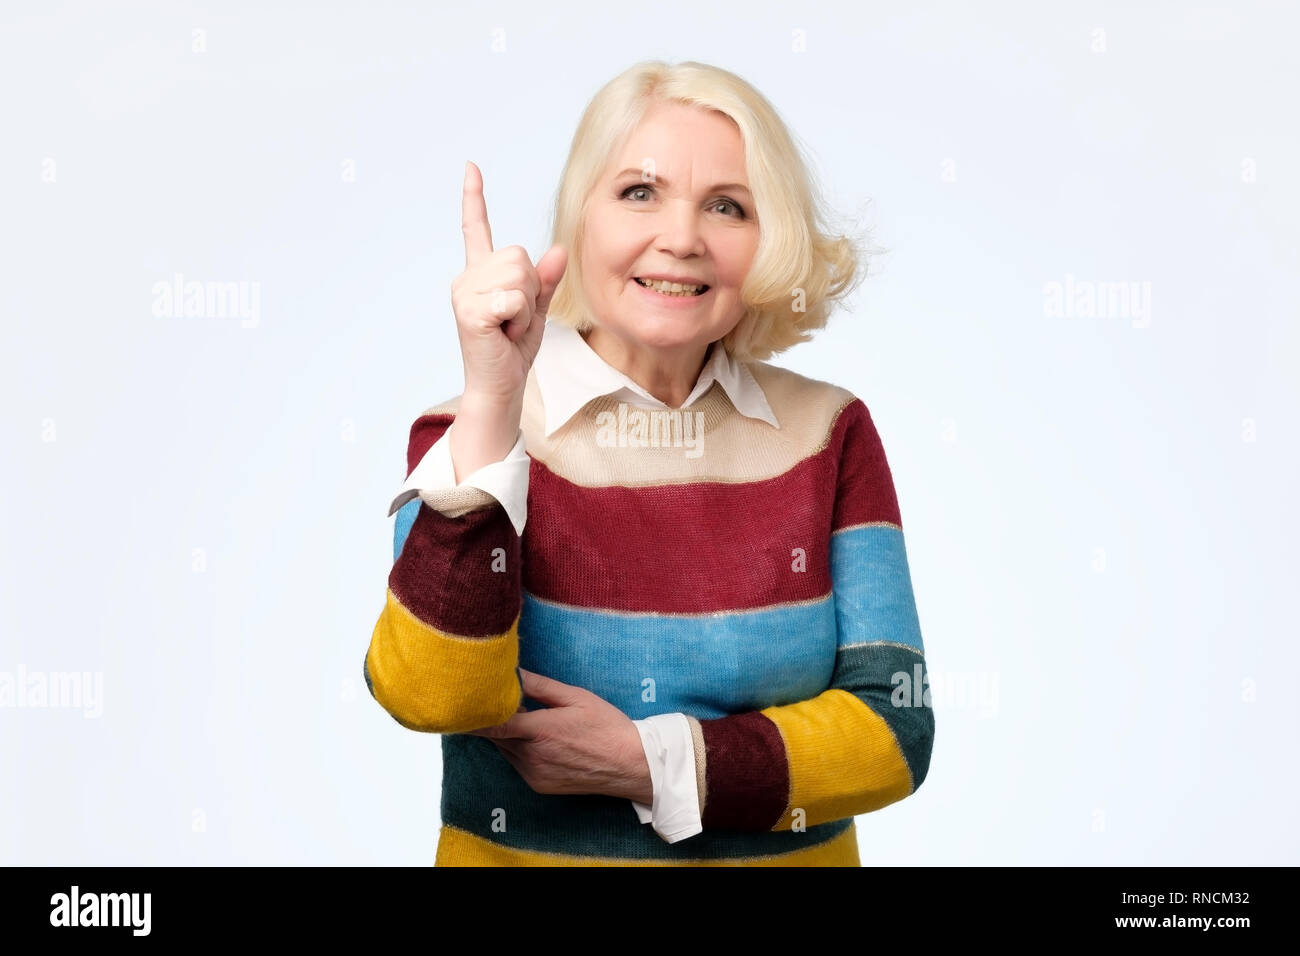 Grand-mère expressive émotionnelle avec l'index pointant vers le haut Banque D'Images